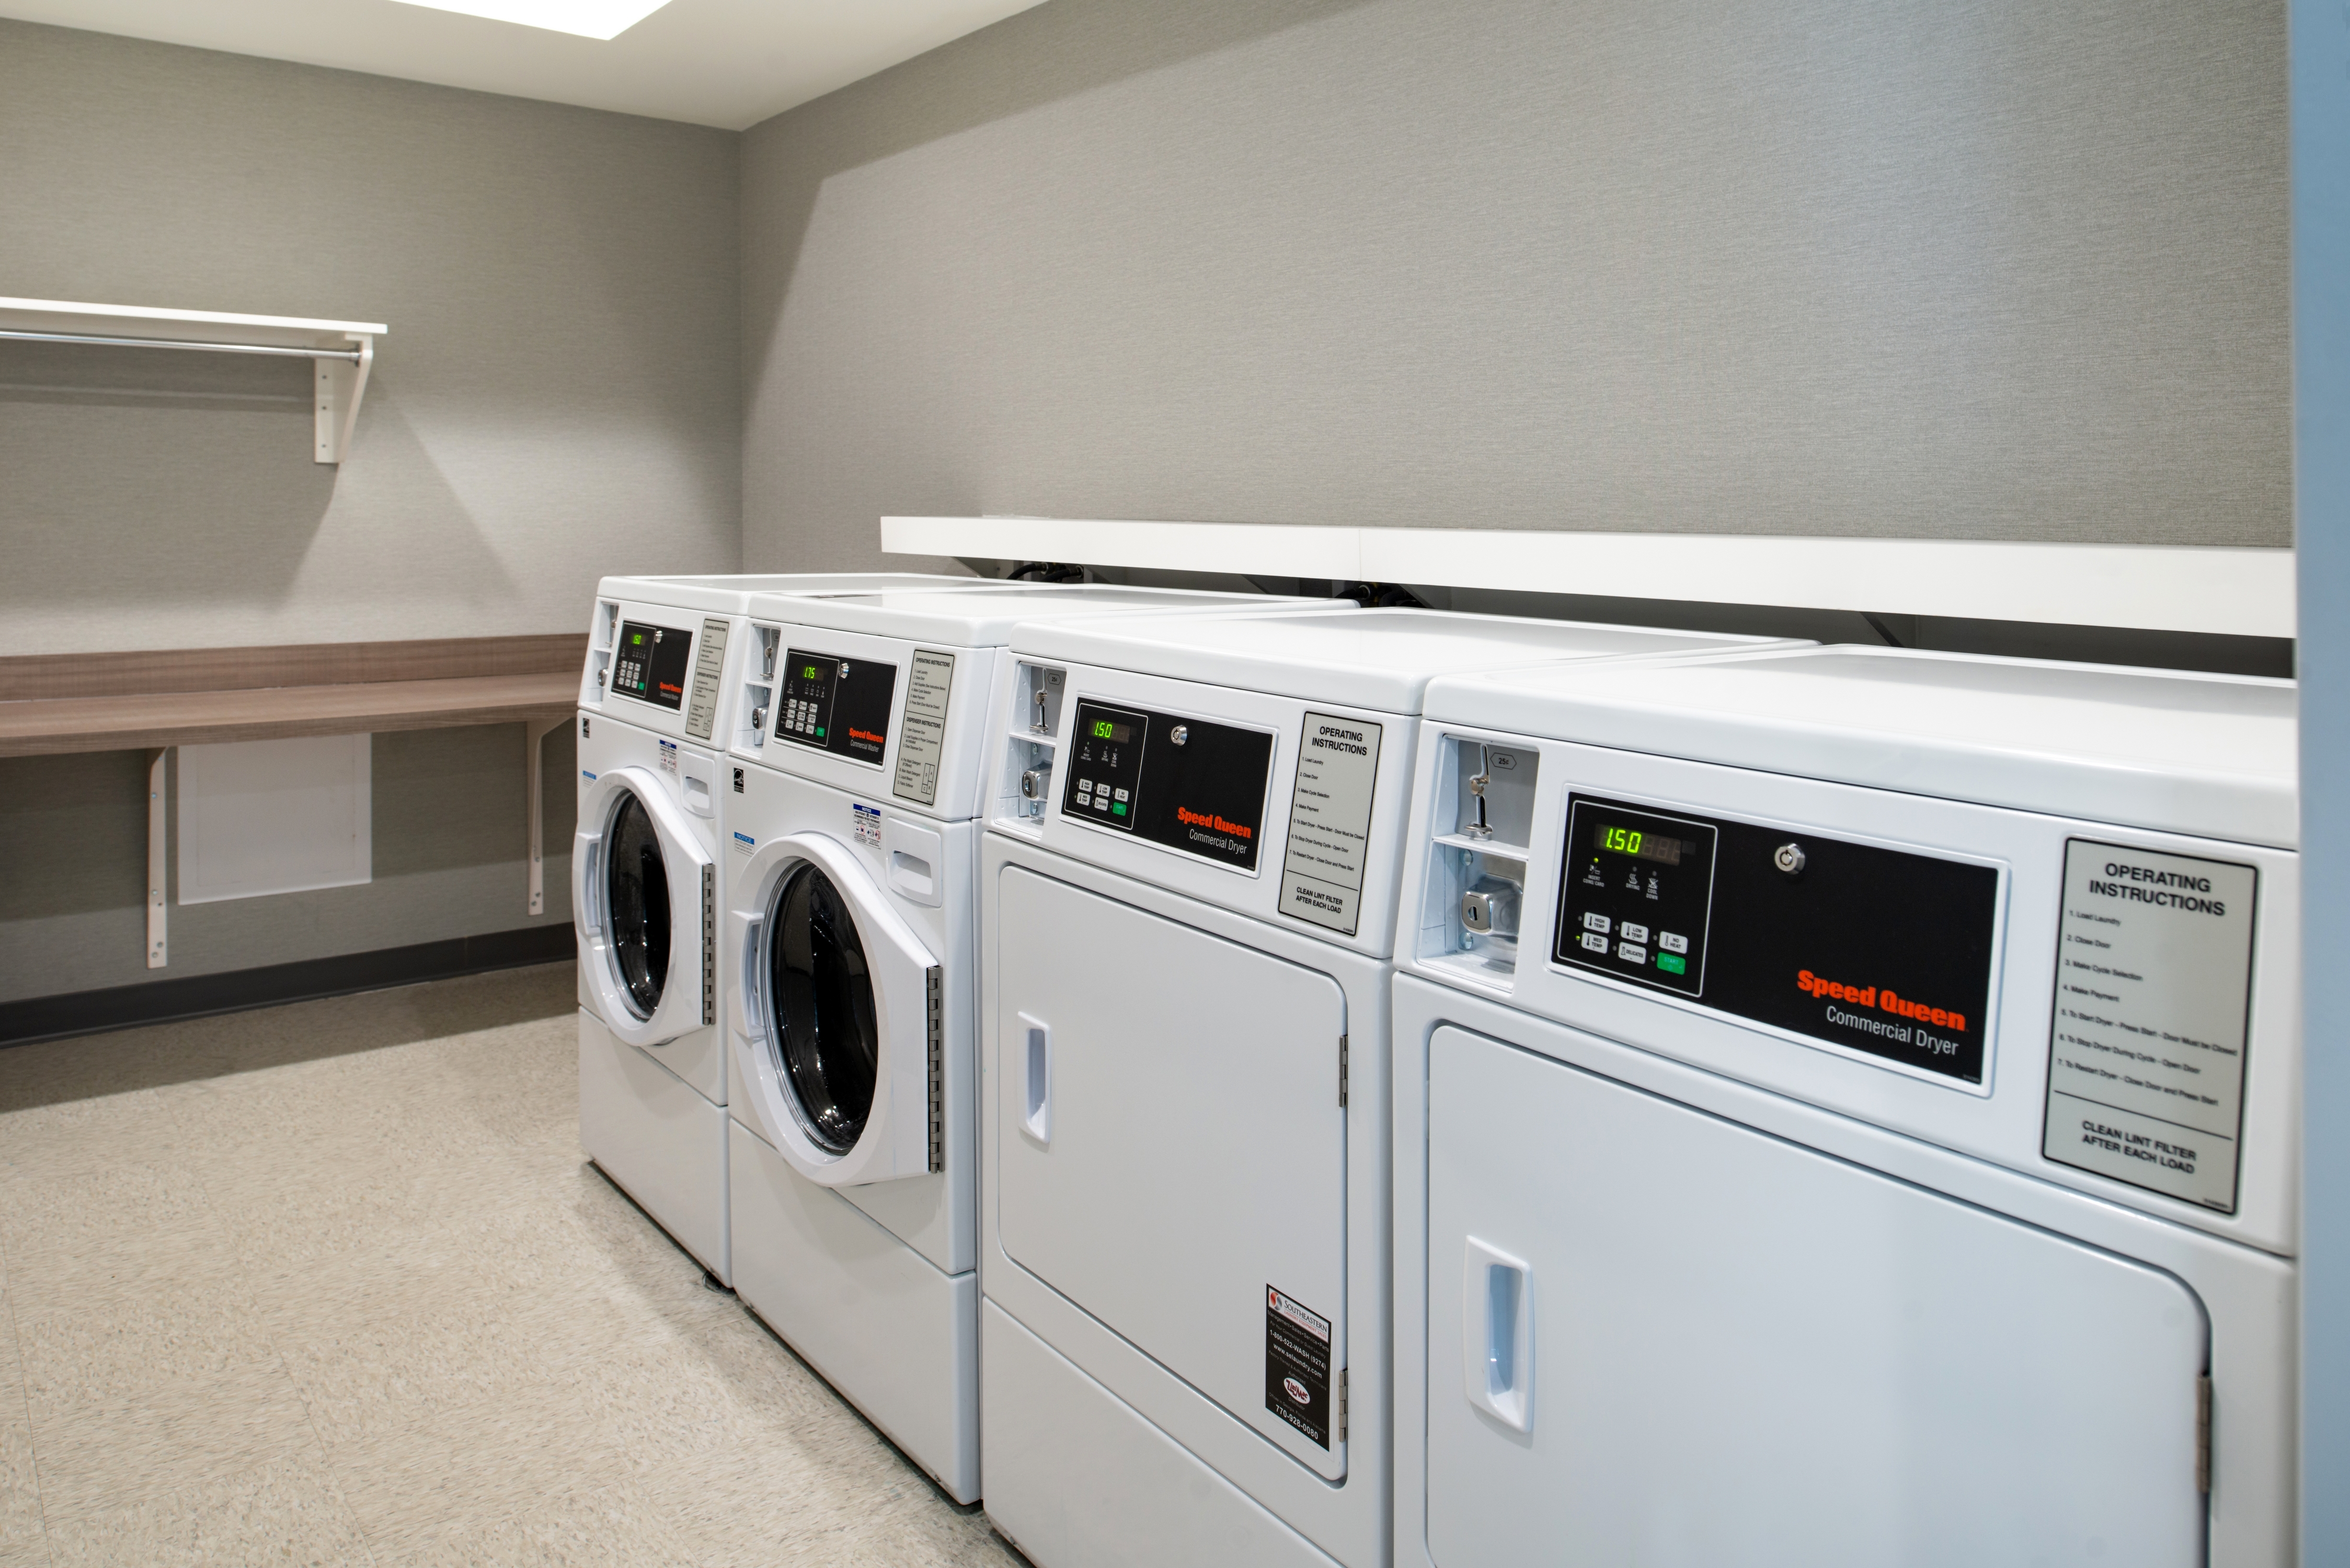  Laundry Facilities